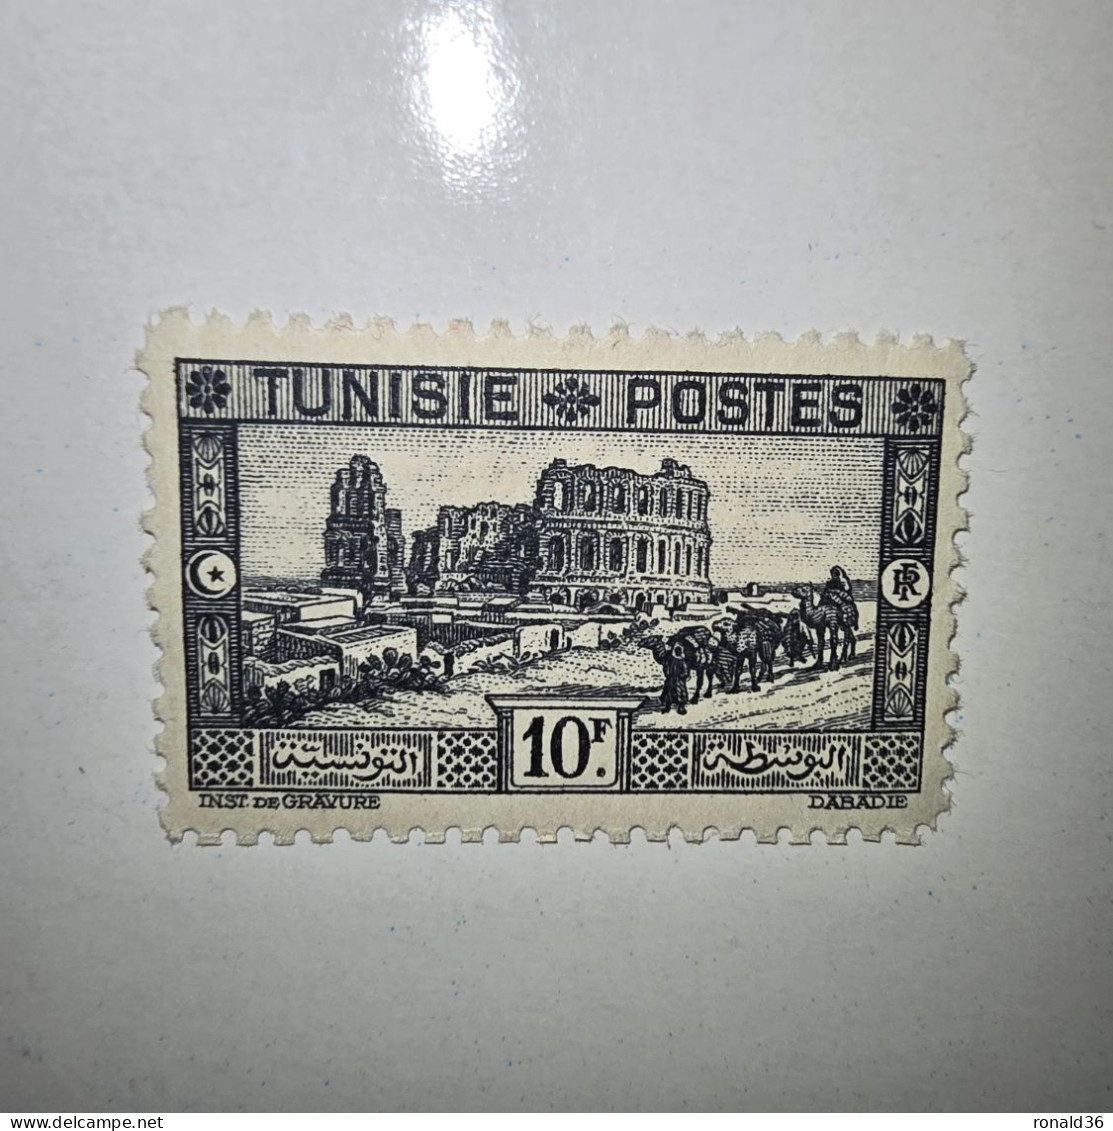 TUNISIE POSTES N° 179 10 Francs Noir F 1888 1938 FRANCE Timbre Poste Francais Ex Colonie Française Protectorat - Nuovi